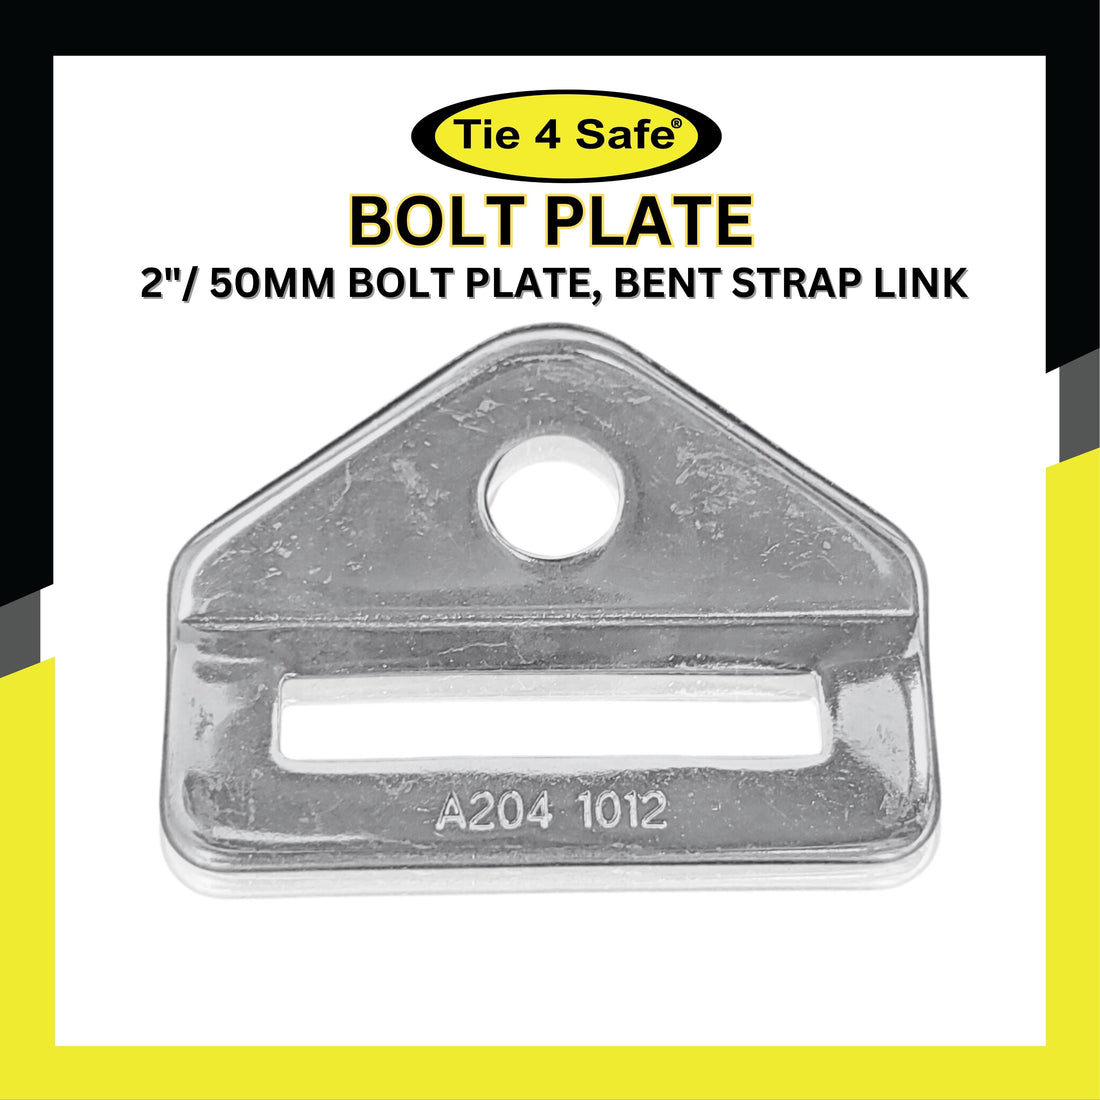 2"/ 50mm Bolt Plate, Bent Strap Link